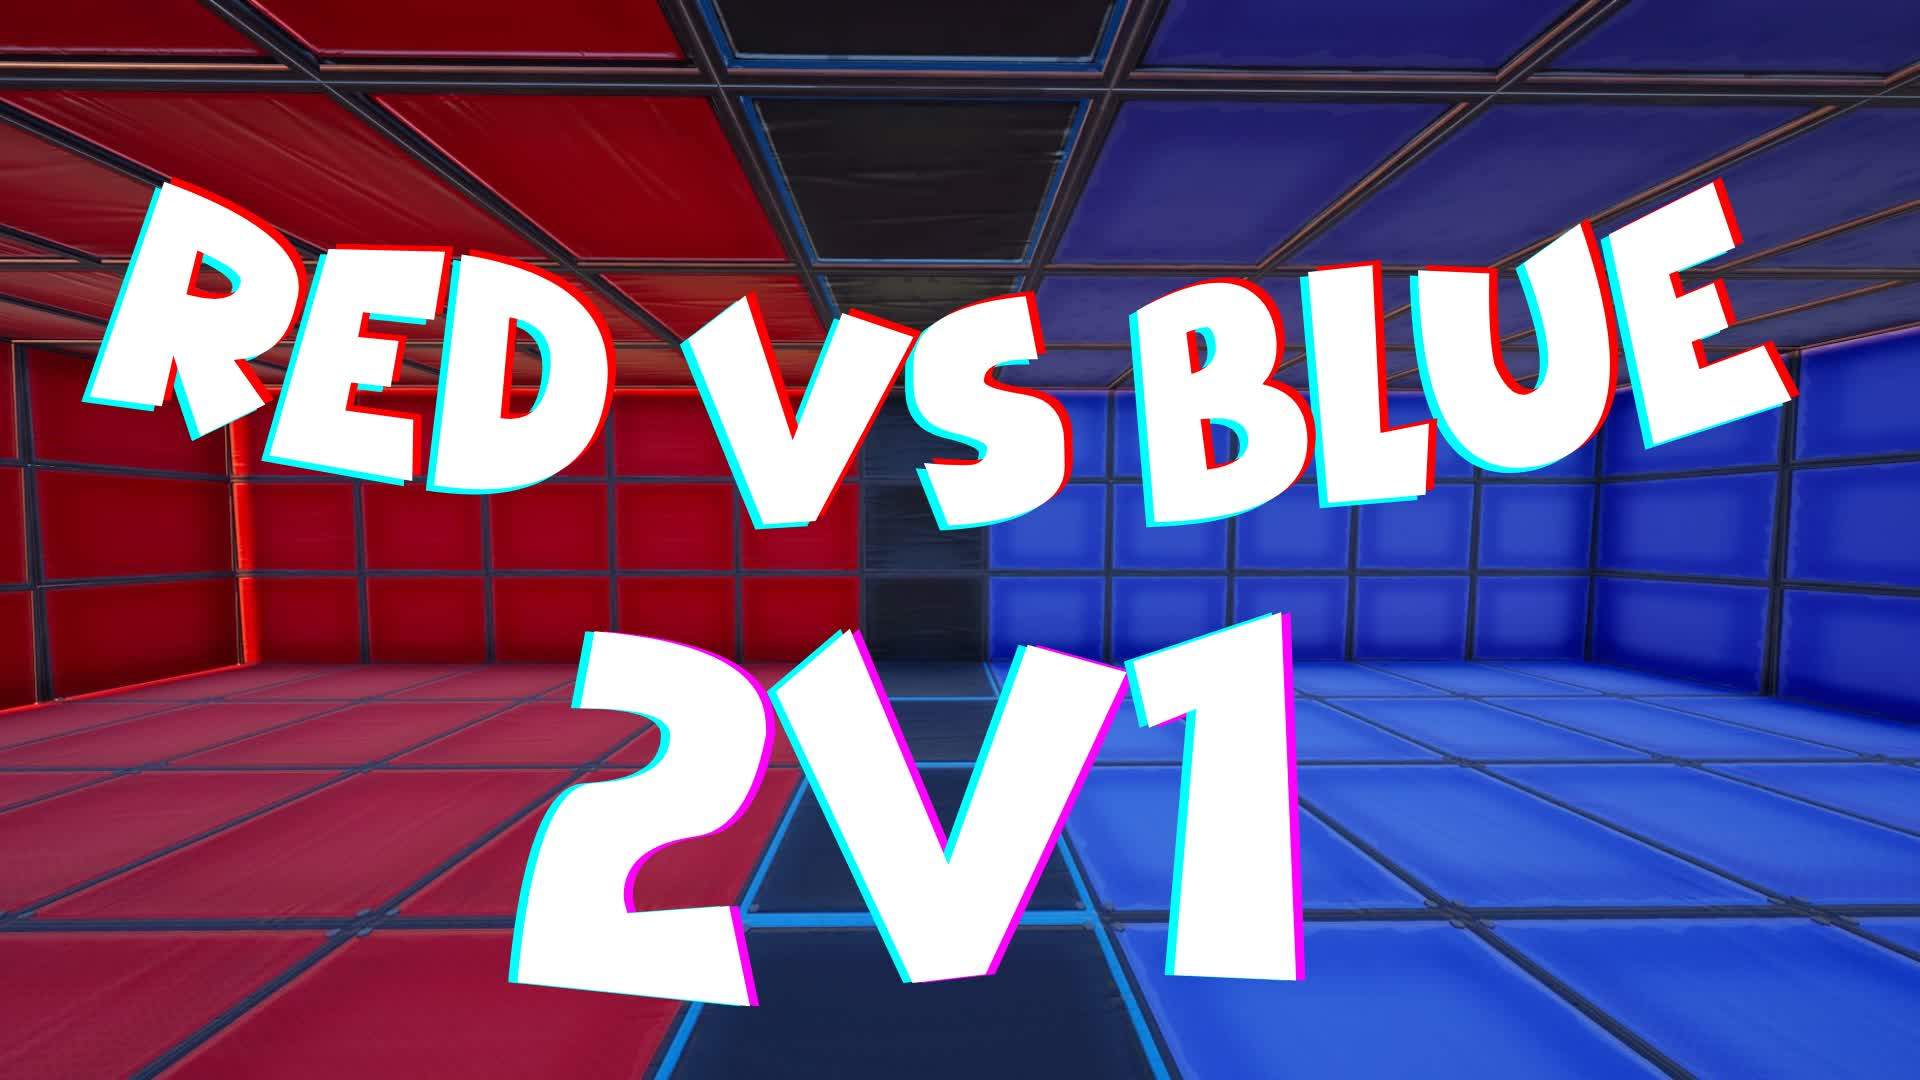 RED VS BLUE 2v1